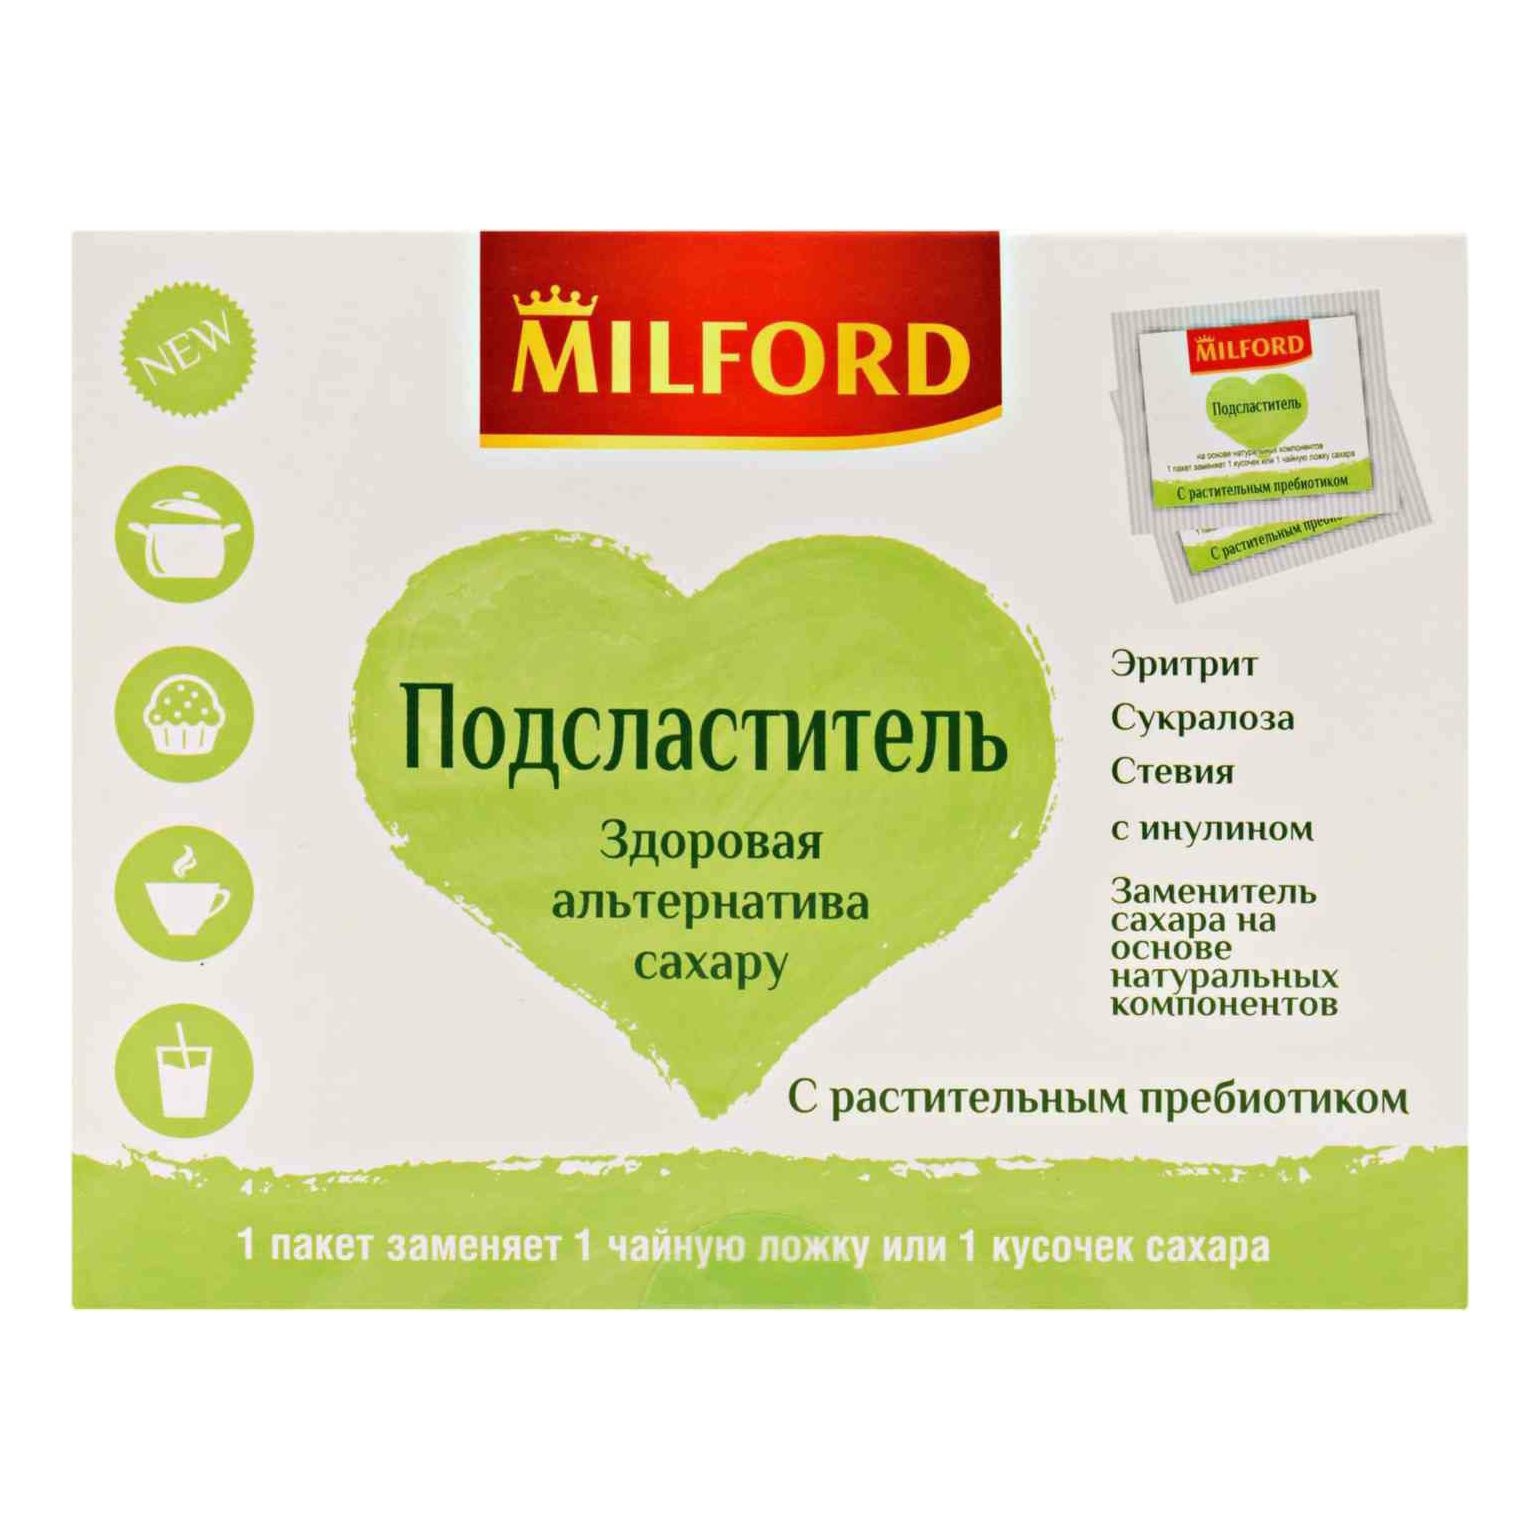 Сахарозаменитель Milford Эритрит-сукралоза-стевия саше 1 г х 50 шт